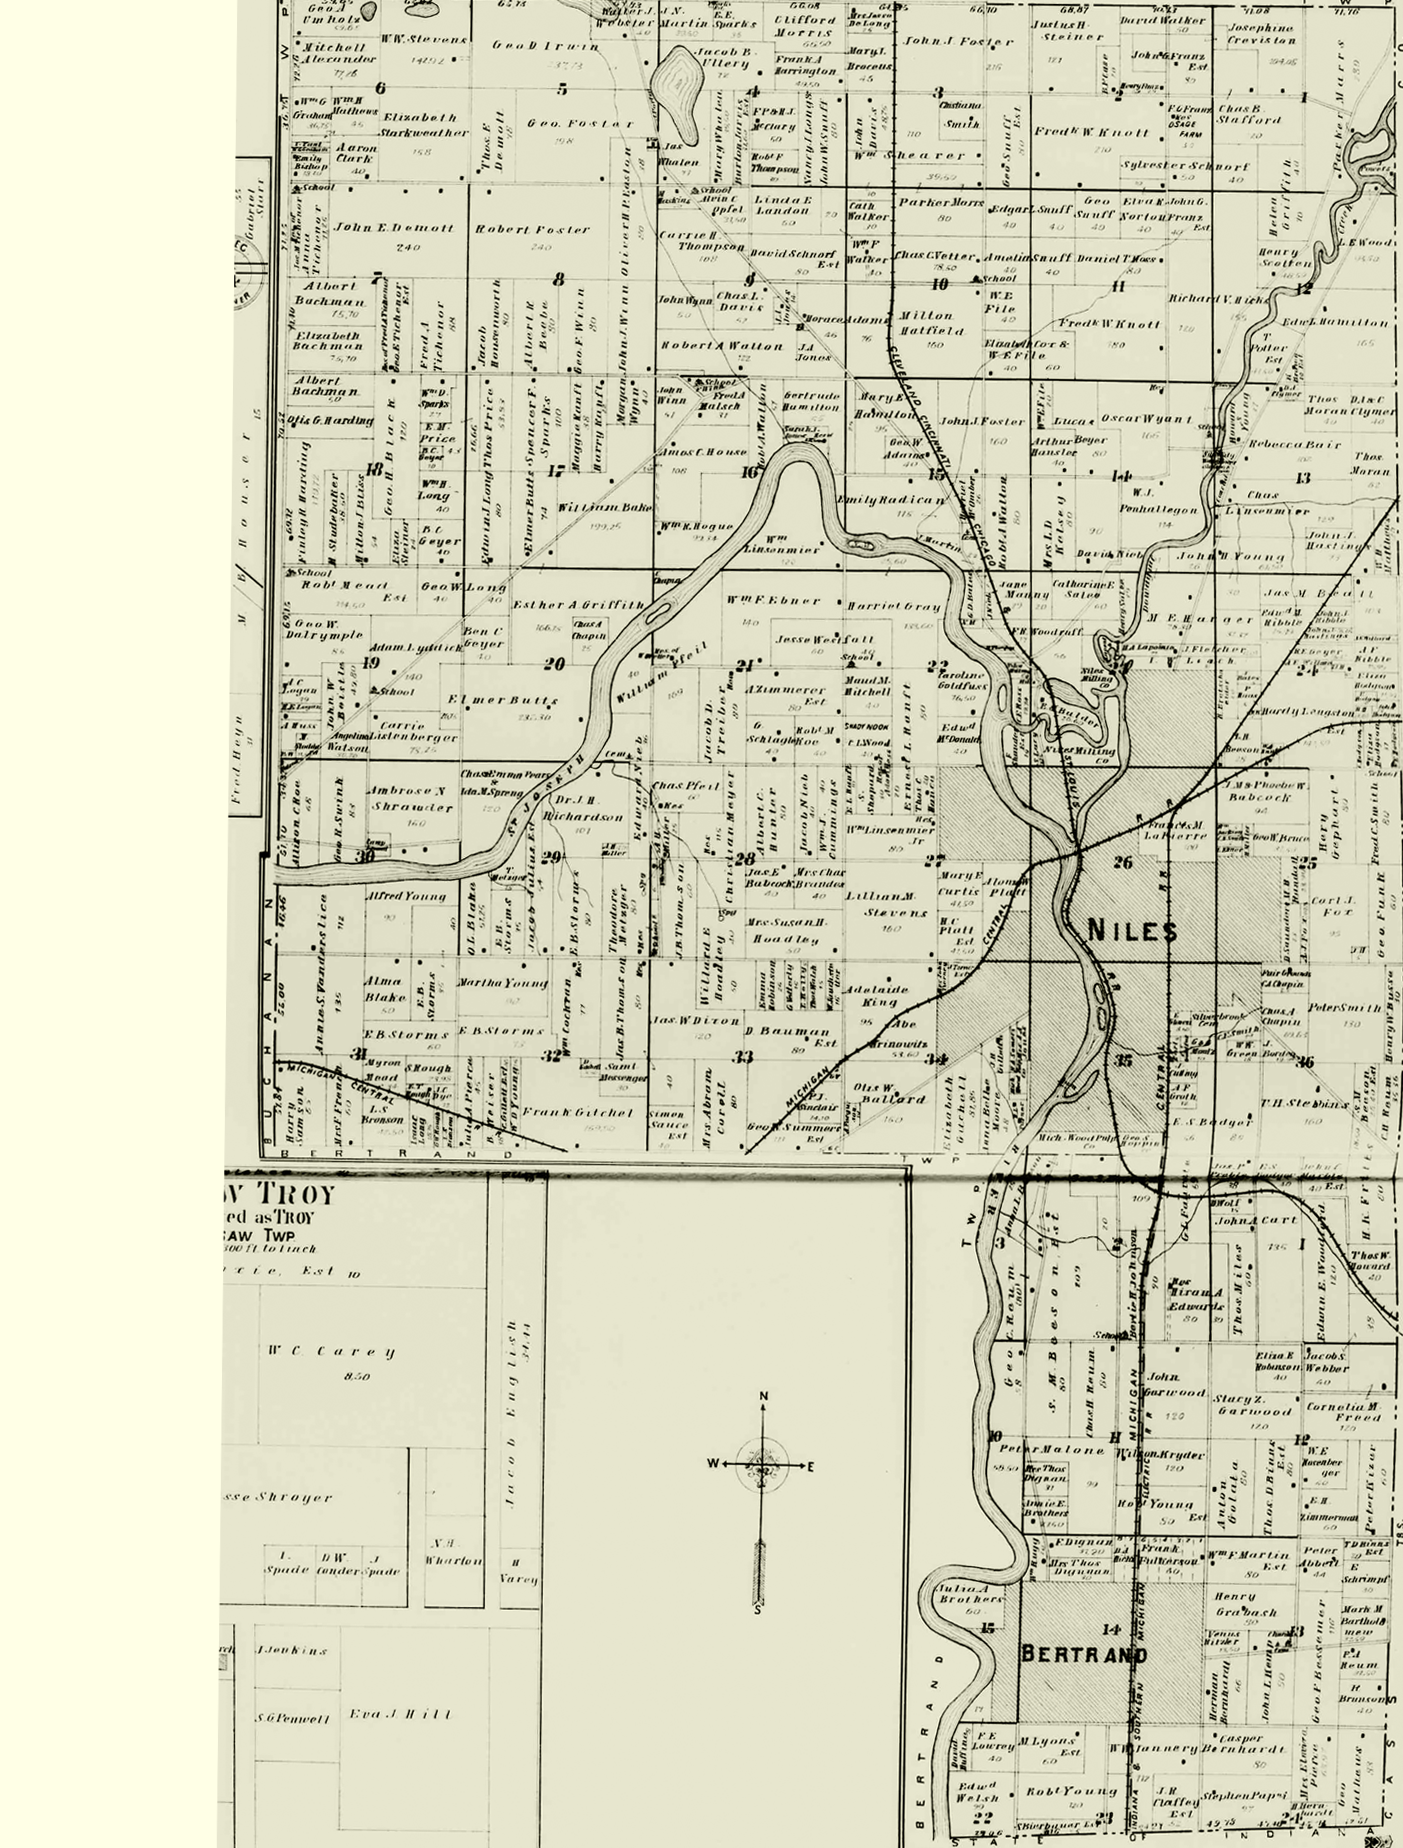 1903 Niles Township, Michigan landownership map